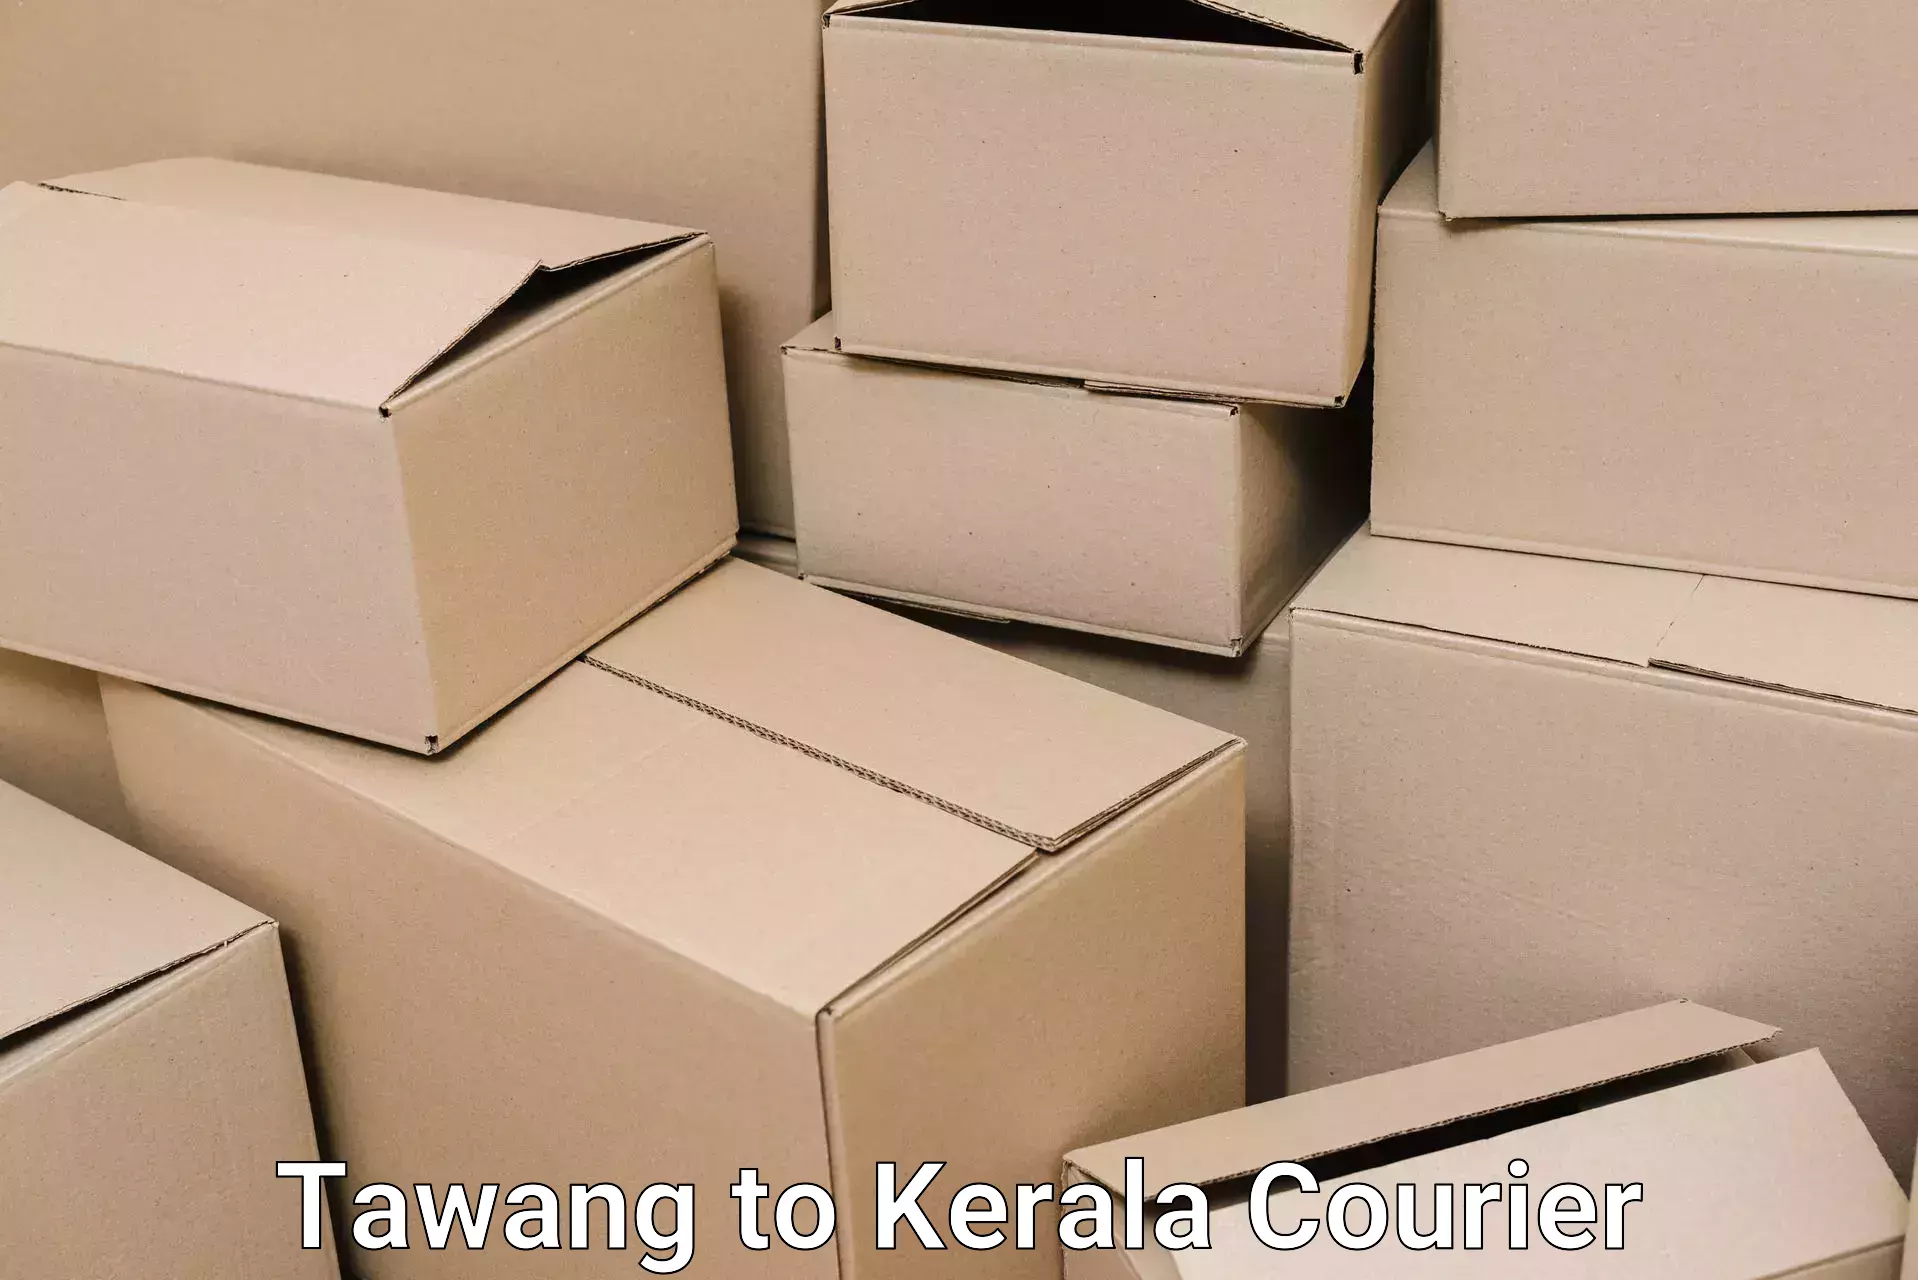 Trusted household movers Tawang to Koothattukulam